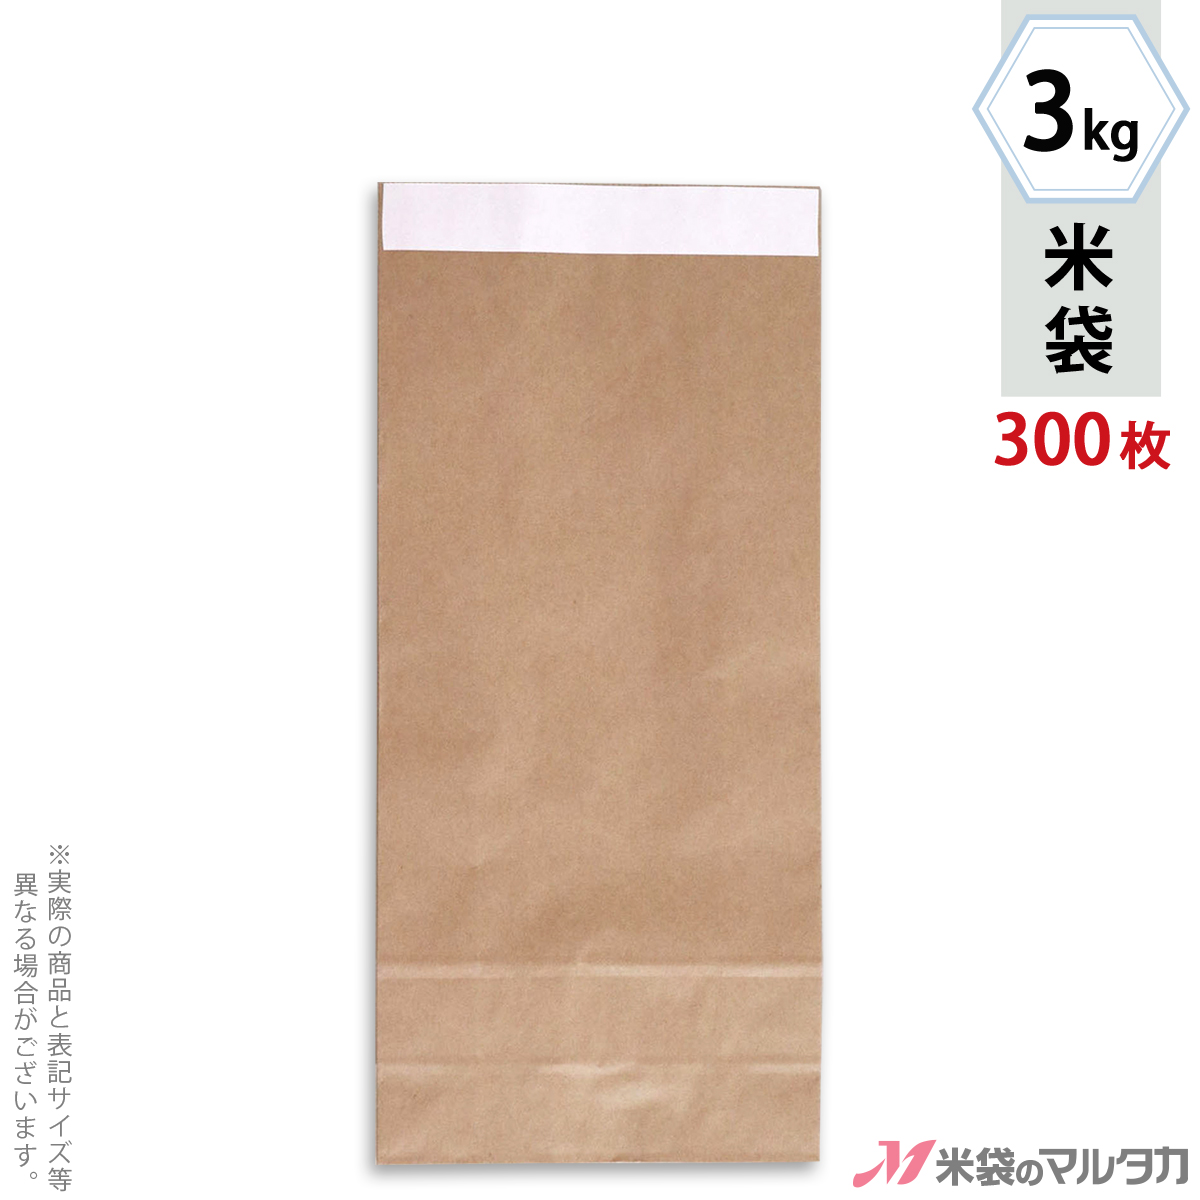 【米袋 3kg 1ケース（300枚入）】無地のクラフト米袋。テープで貼り付けるので簡単に封ができます。直売所での販売、産地直送に便利(紙袋)。 米袋 3kg用 テープ式クラフト 無地 1ケース(300枚入) KHT-811 窓なし